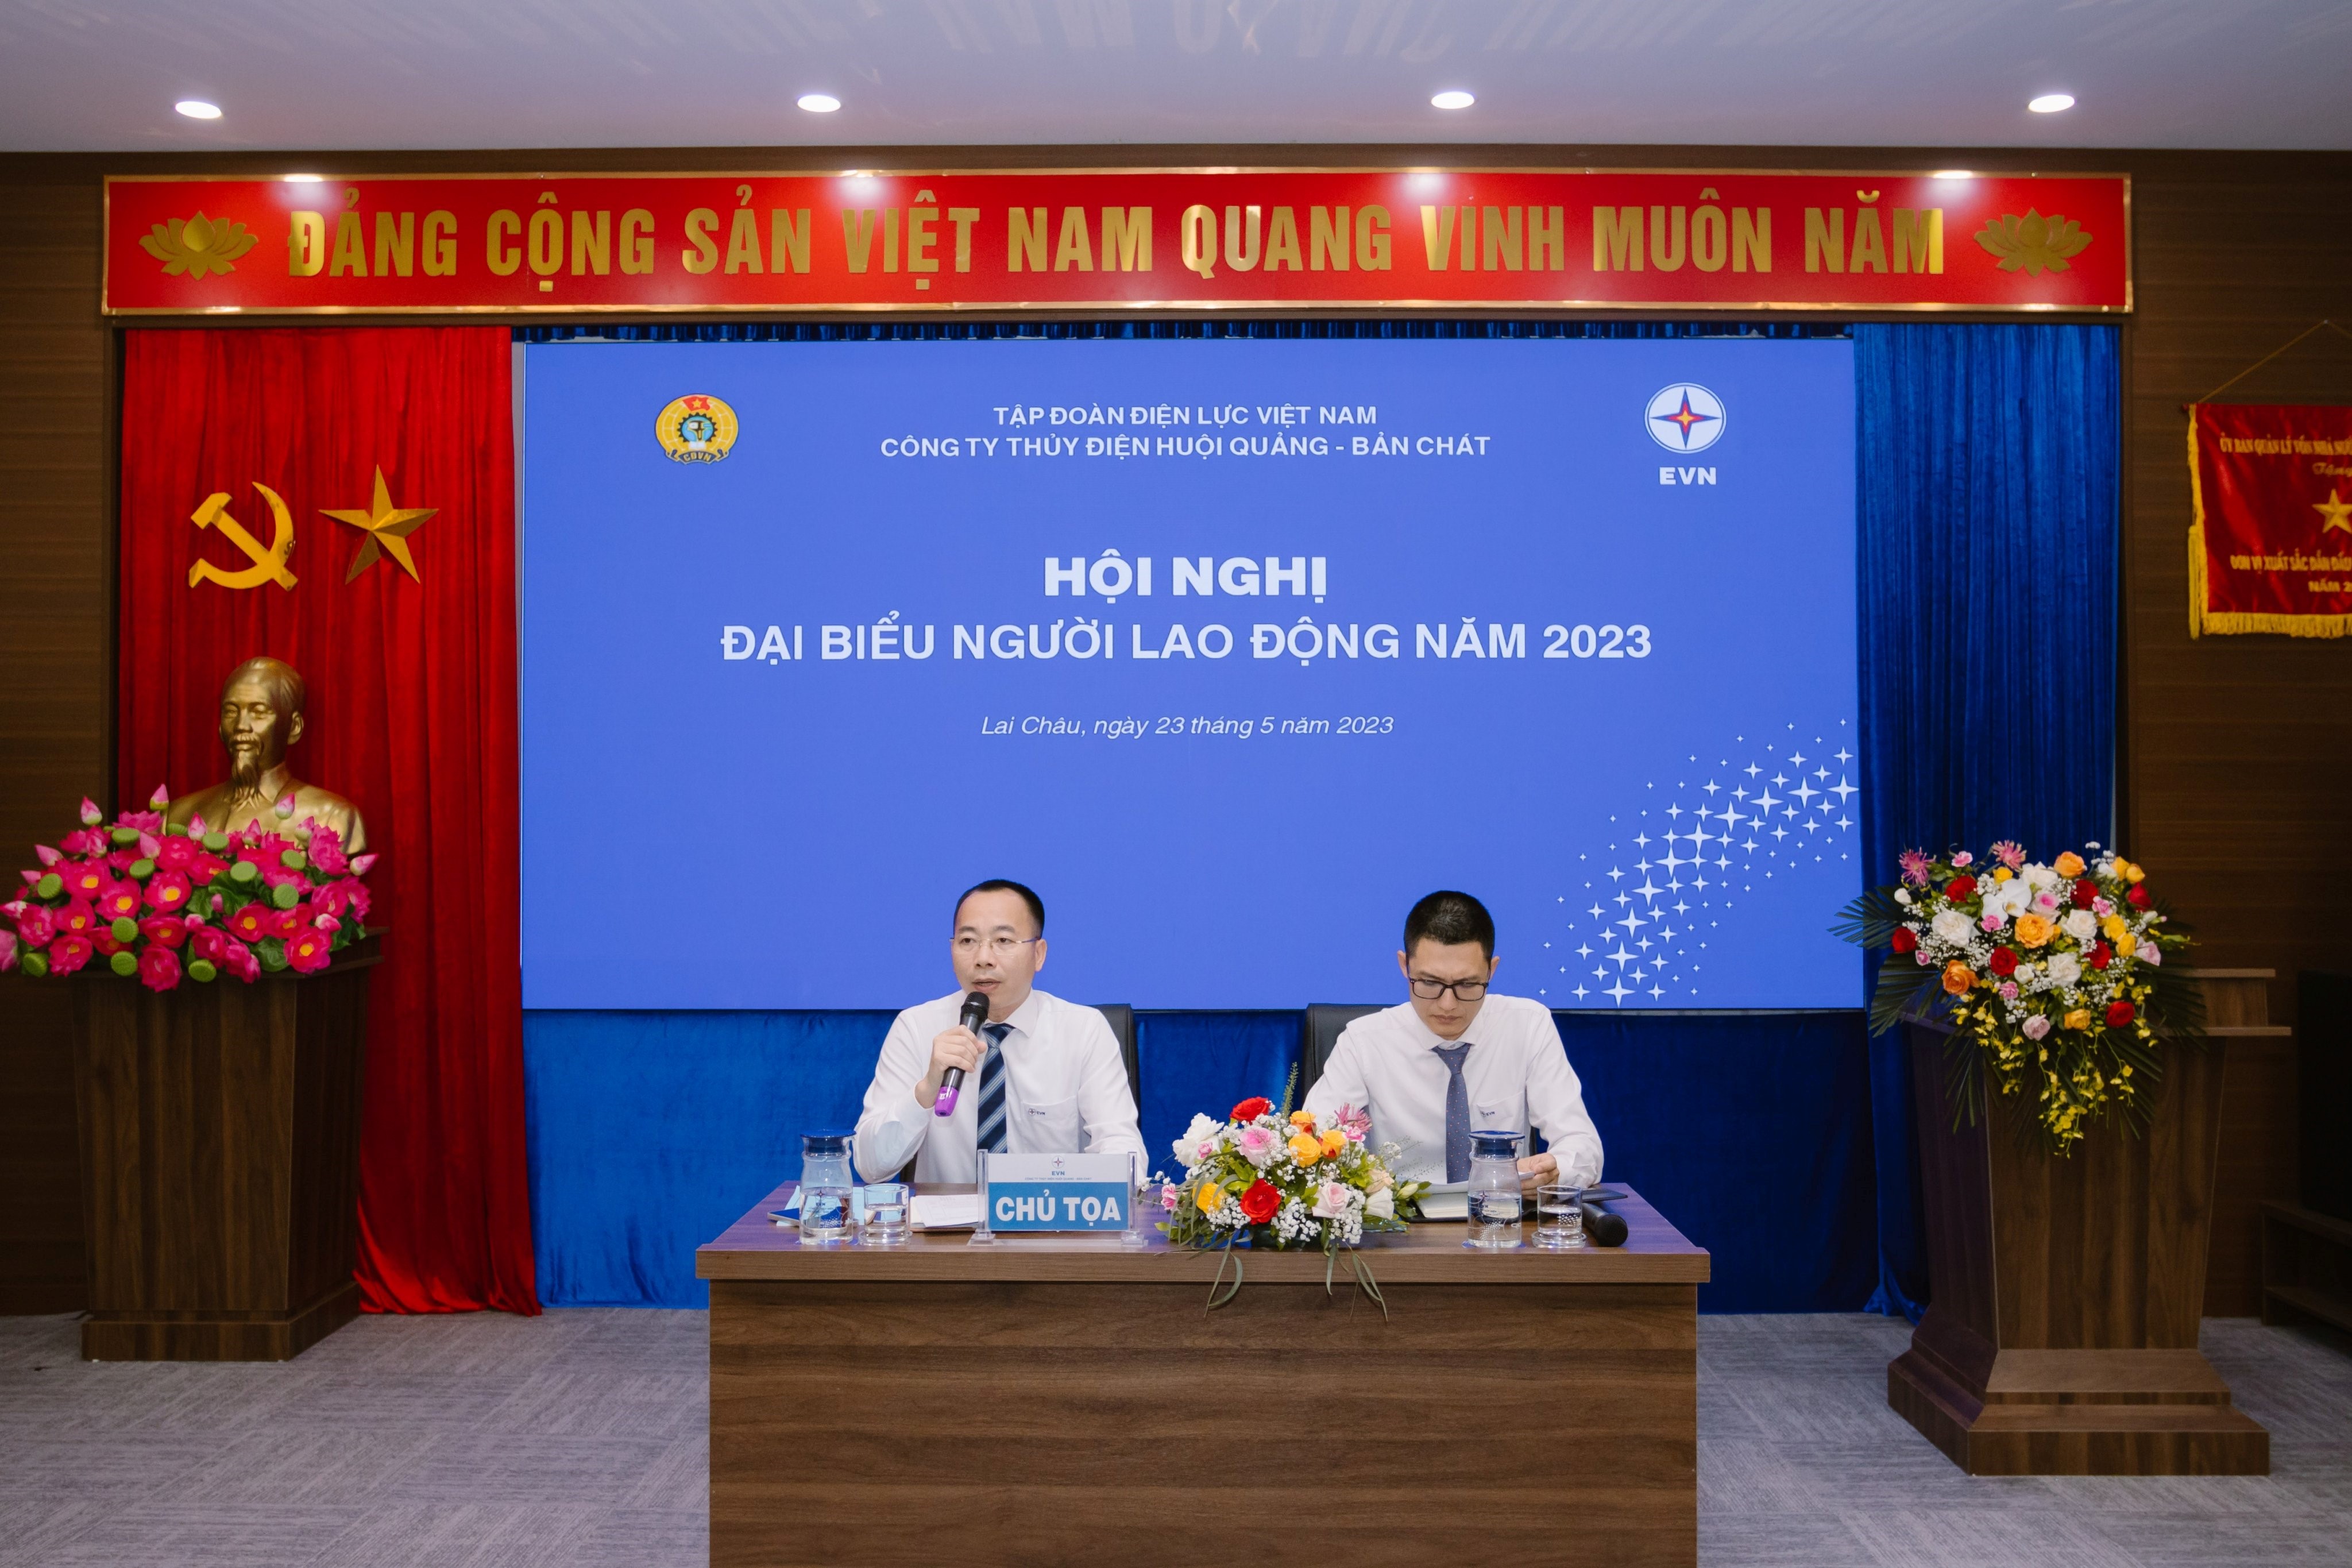 Công ty Thủy điện Huội Quảng - Bản Chát tổ chức thành công Hội nghị đại biểu người lao động năm 2023